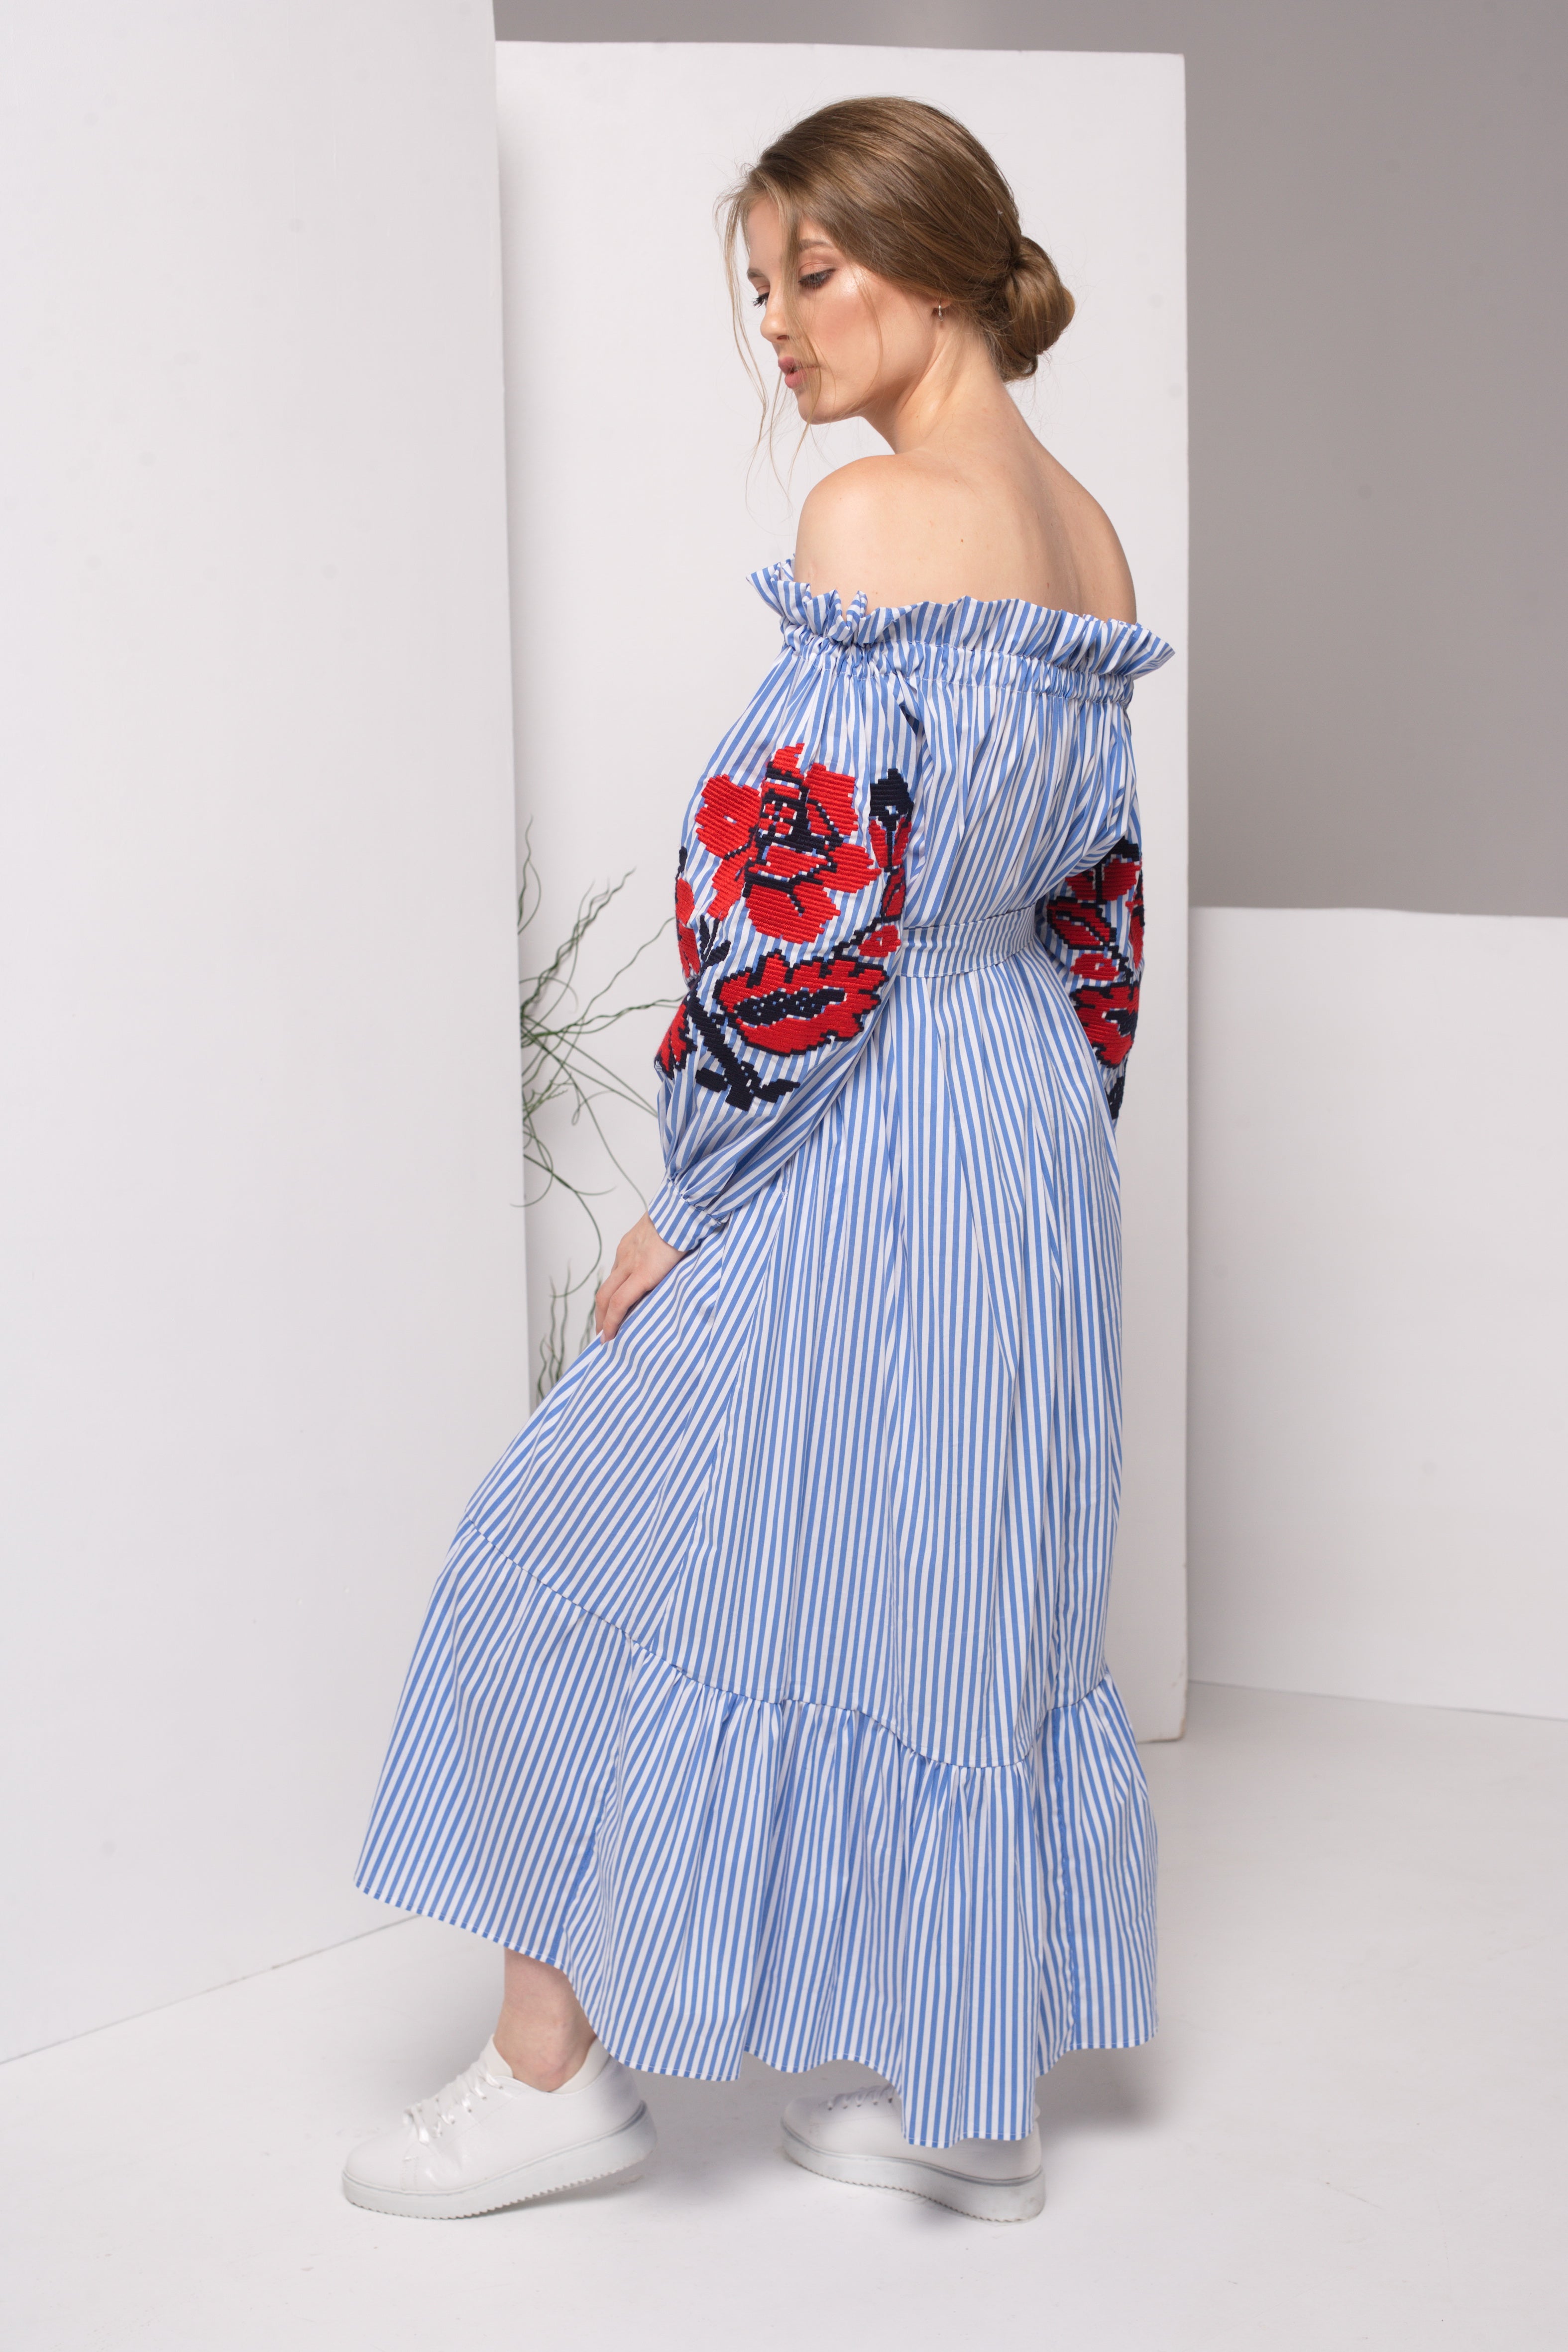 Annabo Vesna Sleeveless Maxi Dress